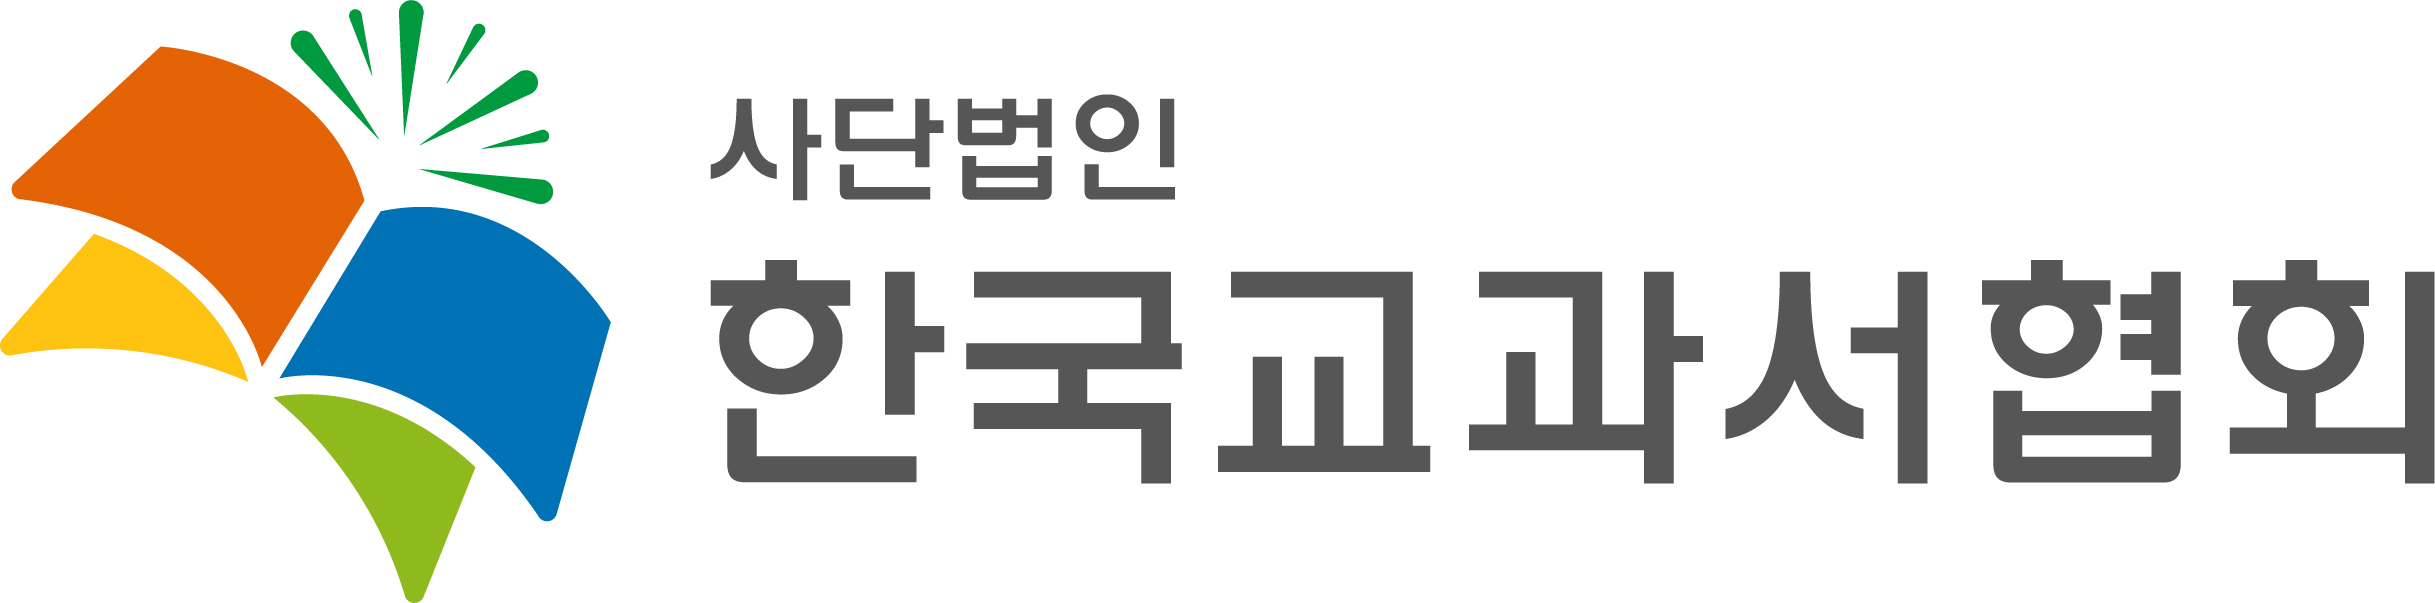 (사)한국교과서협회의 기업로고